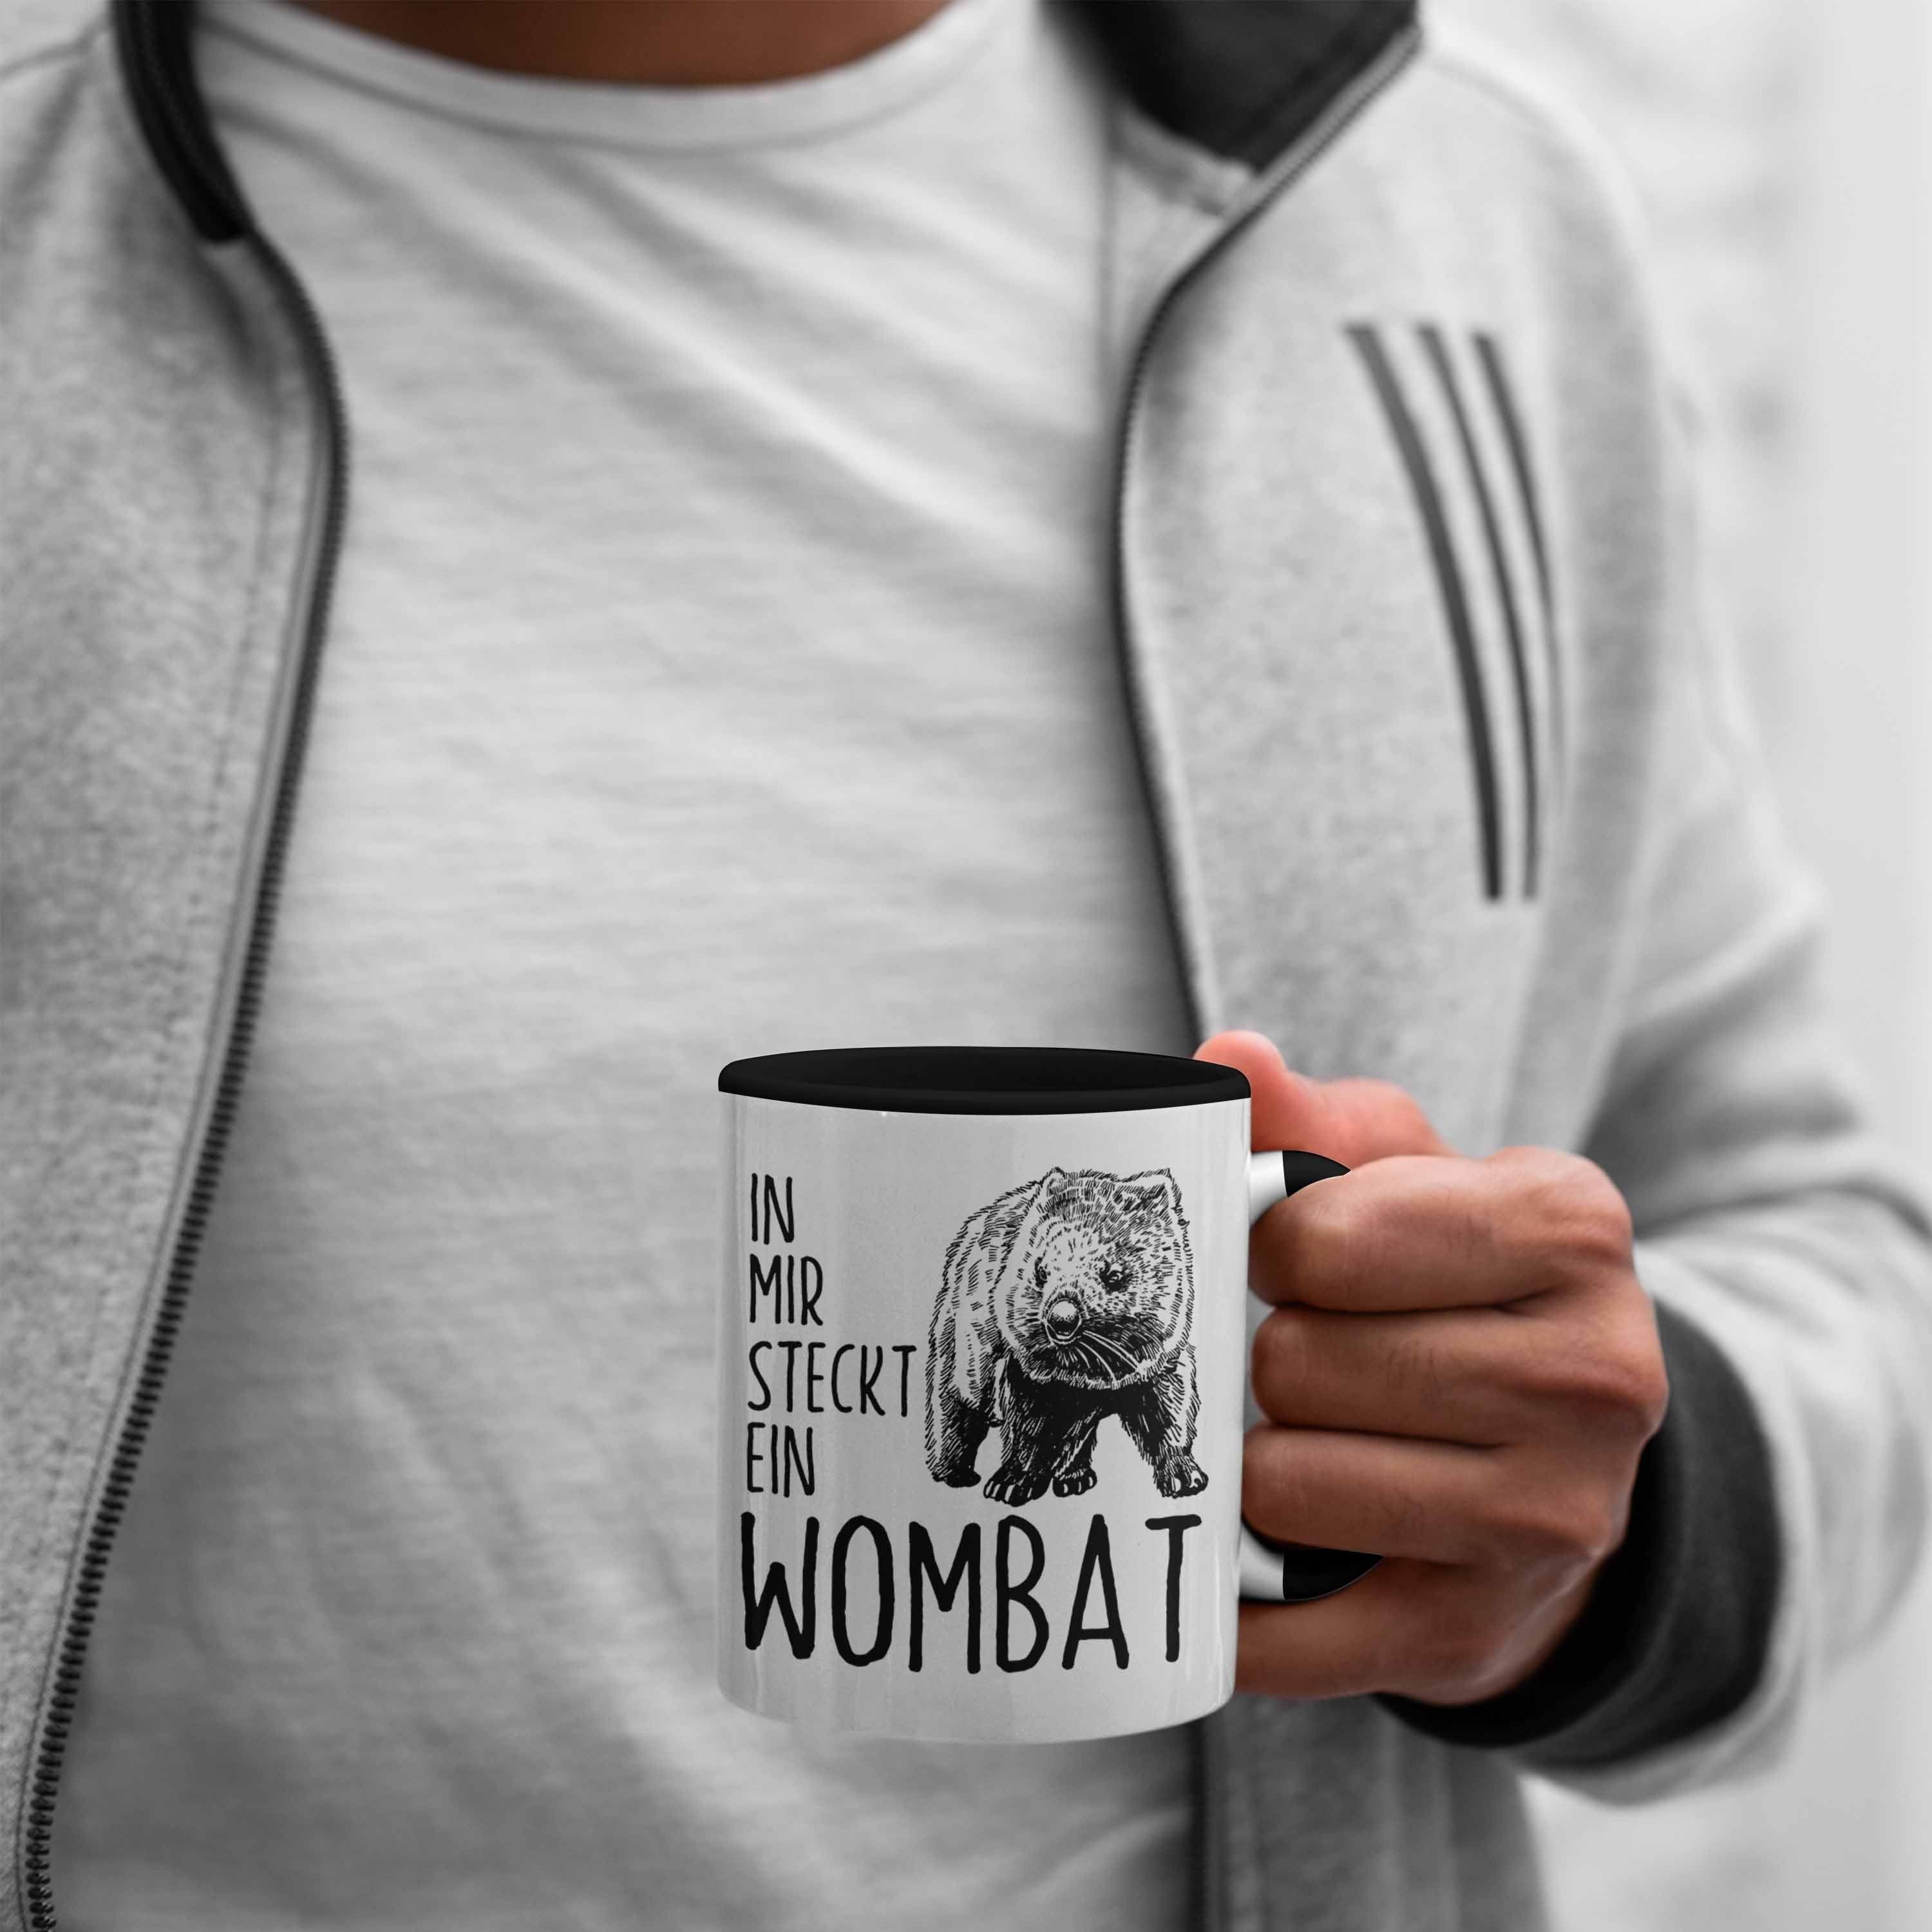 In Geschenk Wombat Tasse Mir Wombat Tasse Schwarz Steckt für Wombat Liebhaber Ein Trendation